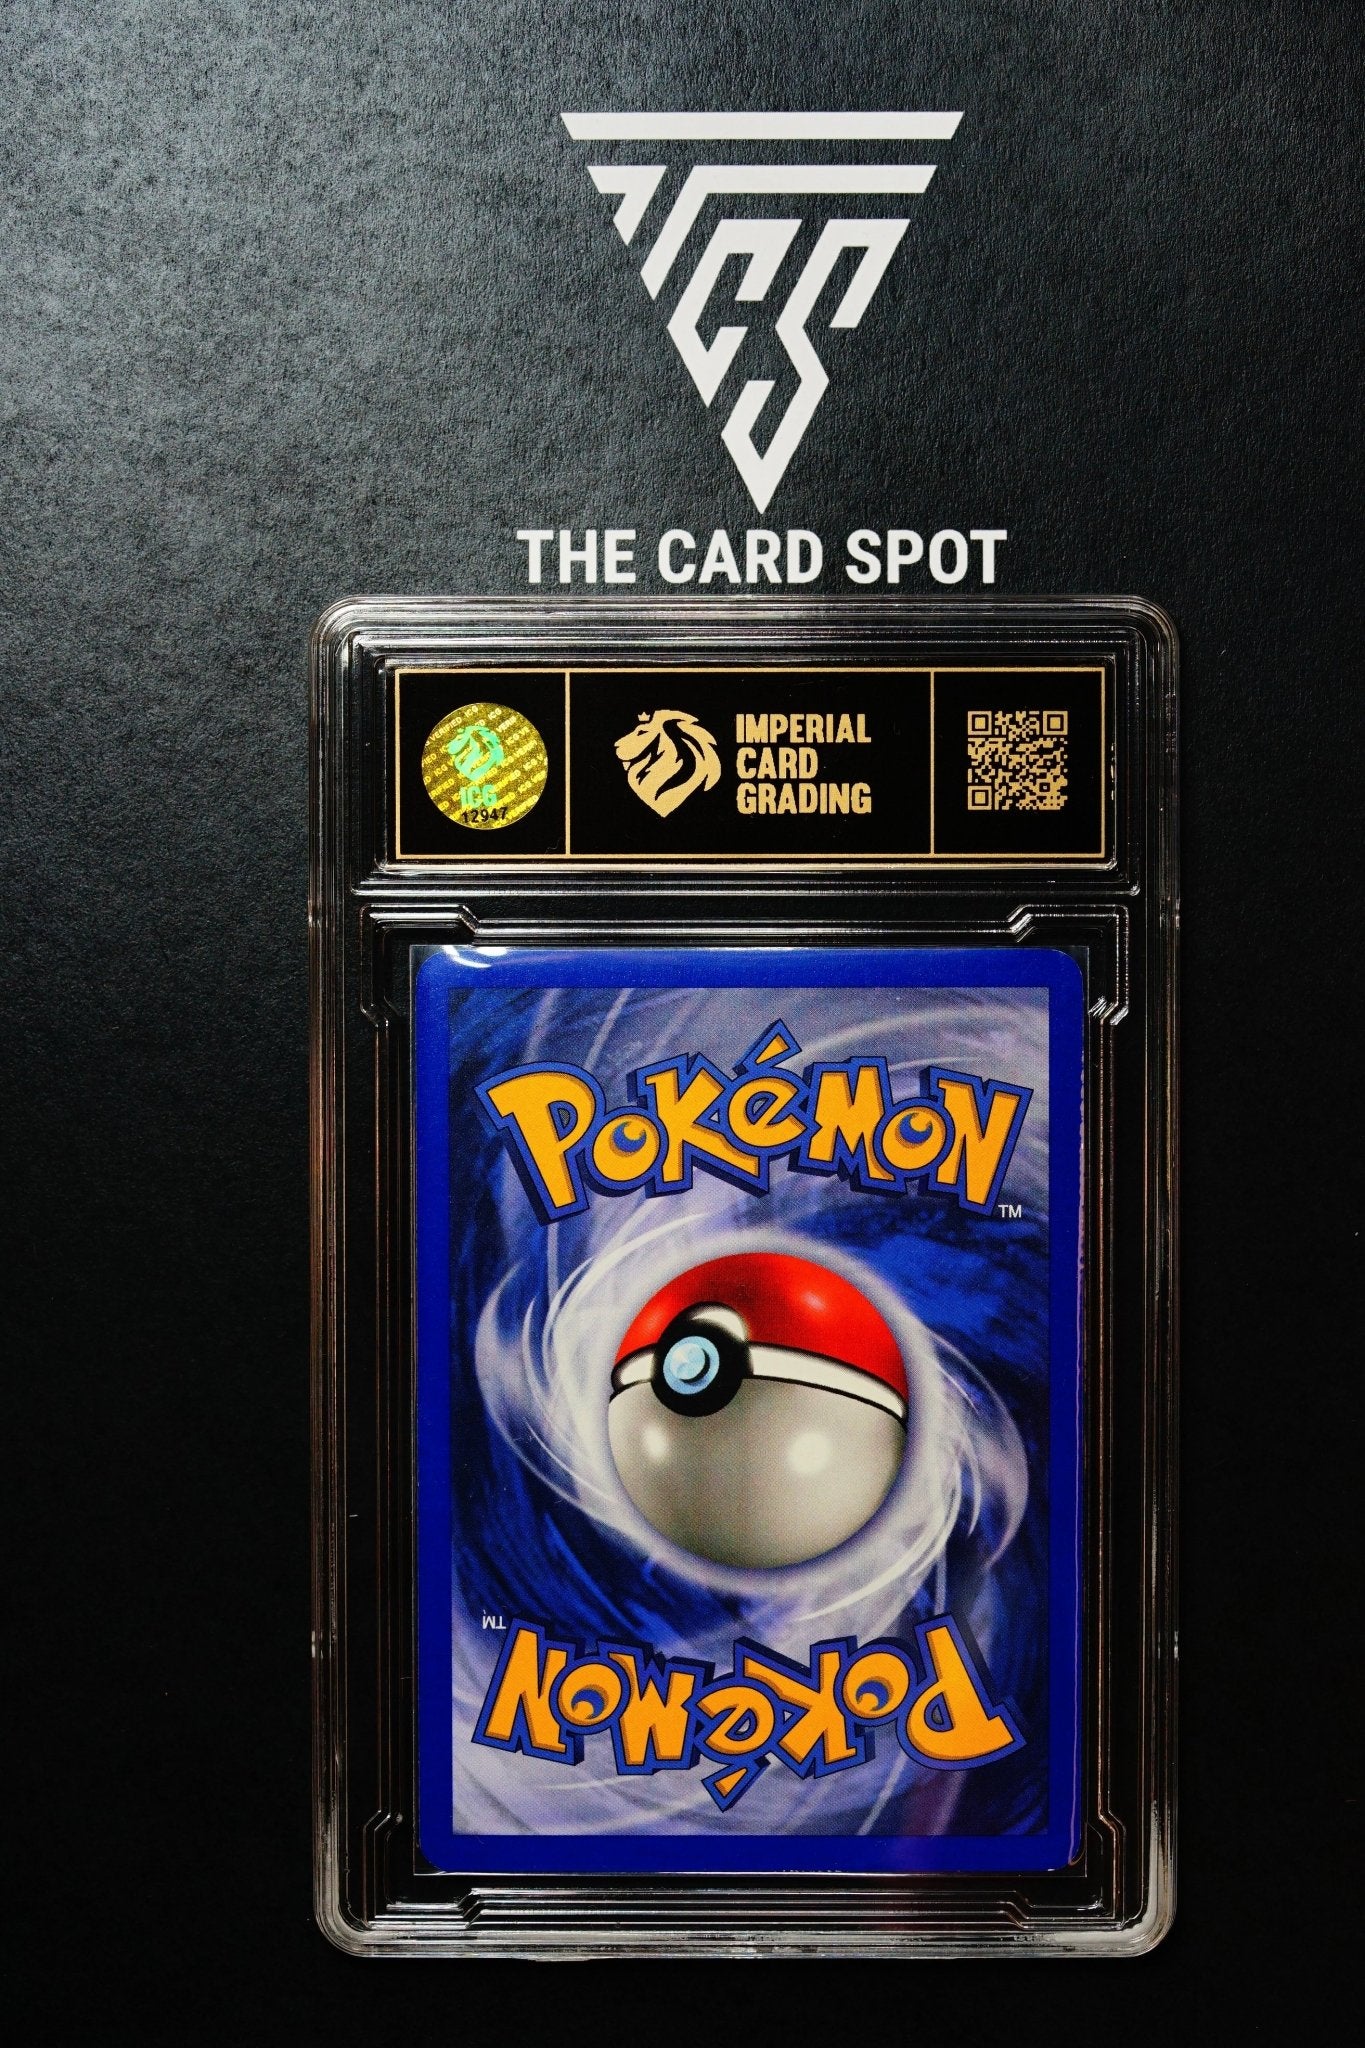 Bill 108/110 Fireworks Holo Foil ICG 9 - Pokemon Card Like PSA - THE CARD SPOT PTY LTD.Pokemon GradedPokémon